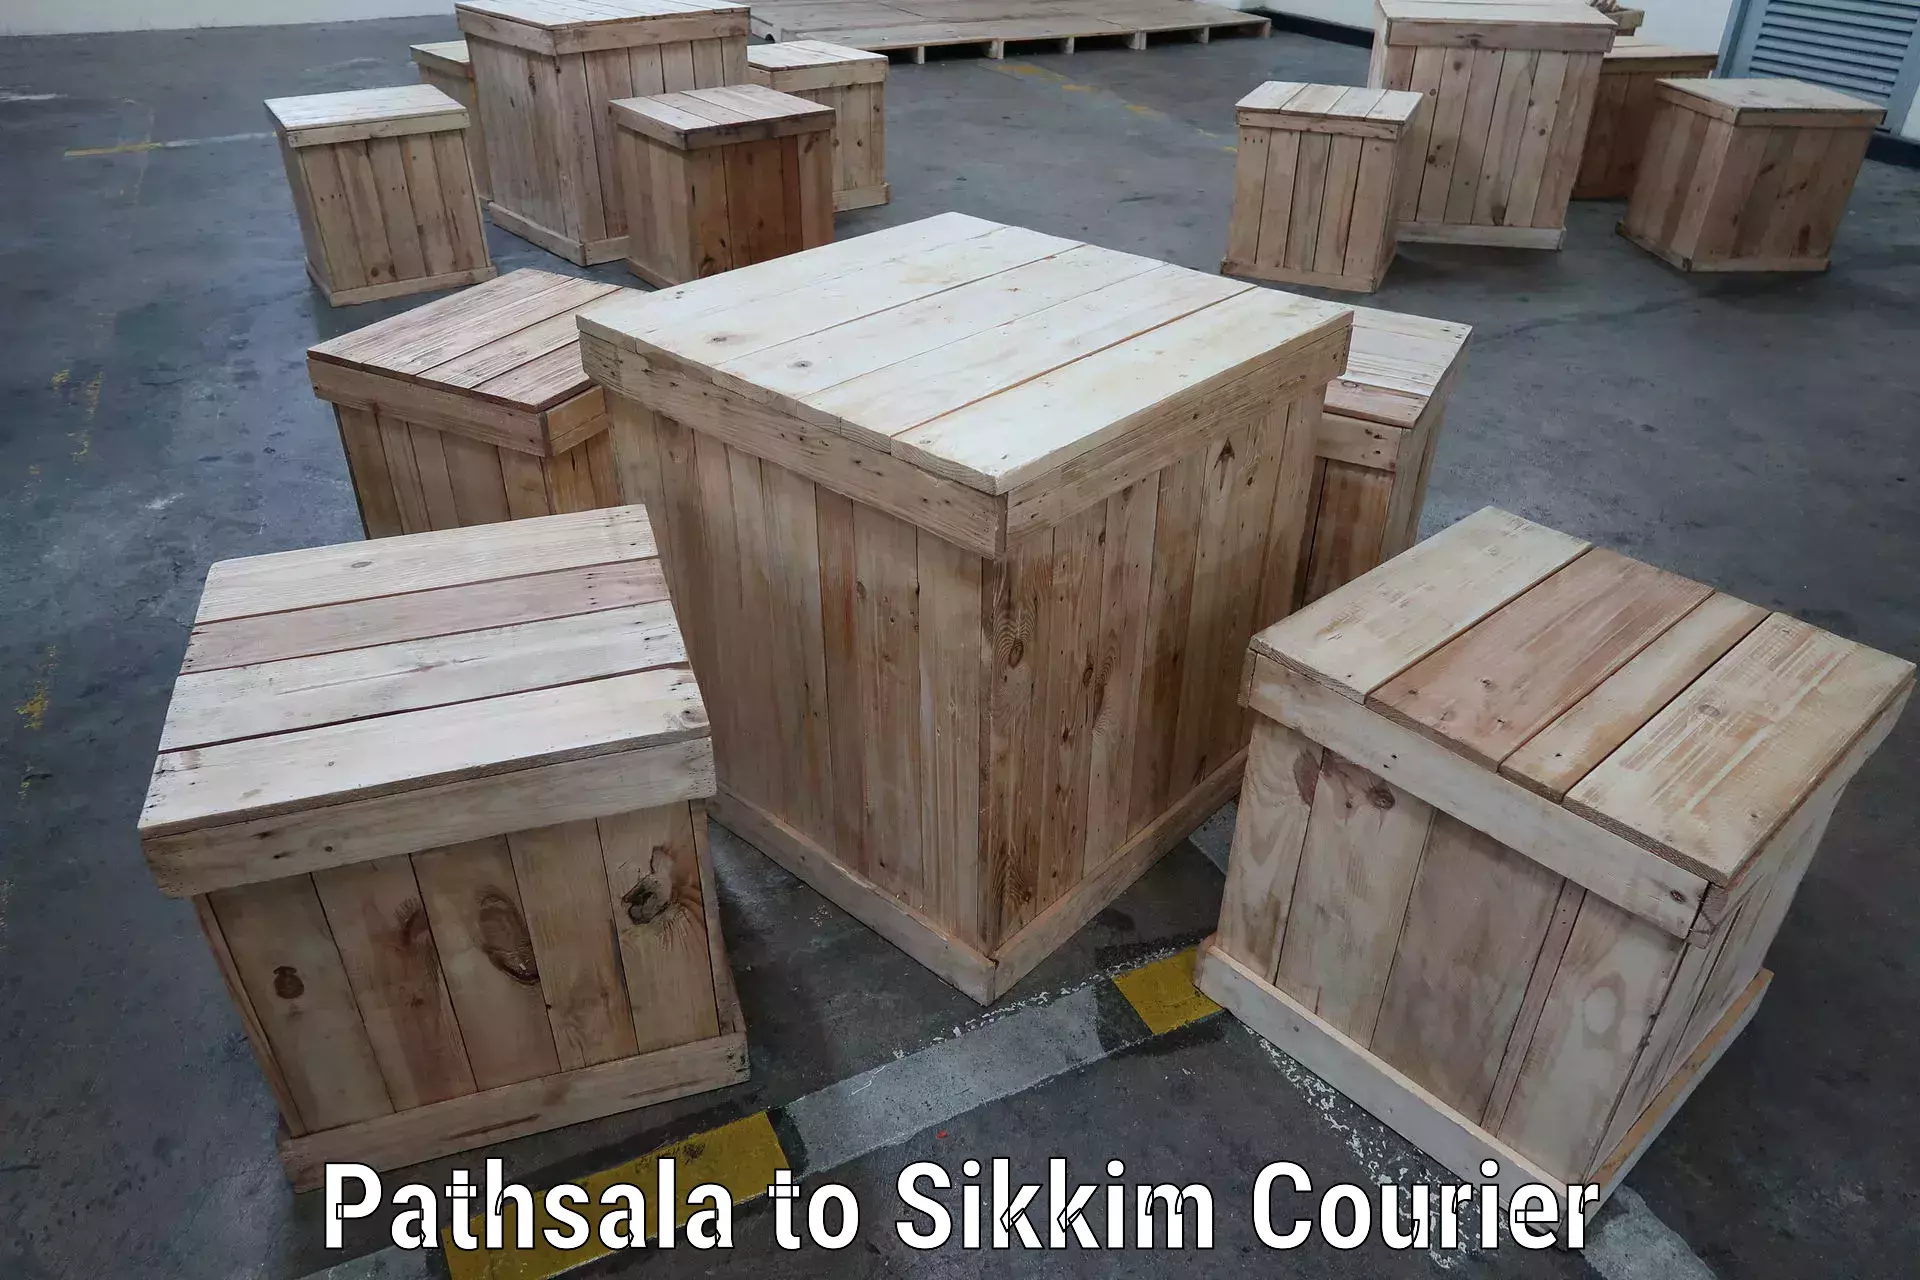 Door-to-door freight service Pathsala to Sikkim